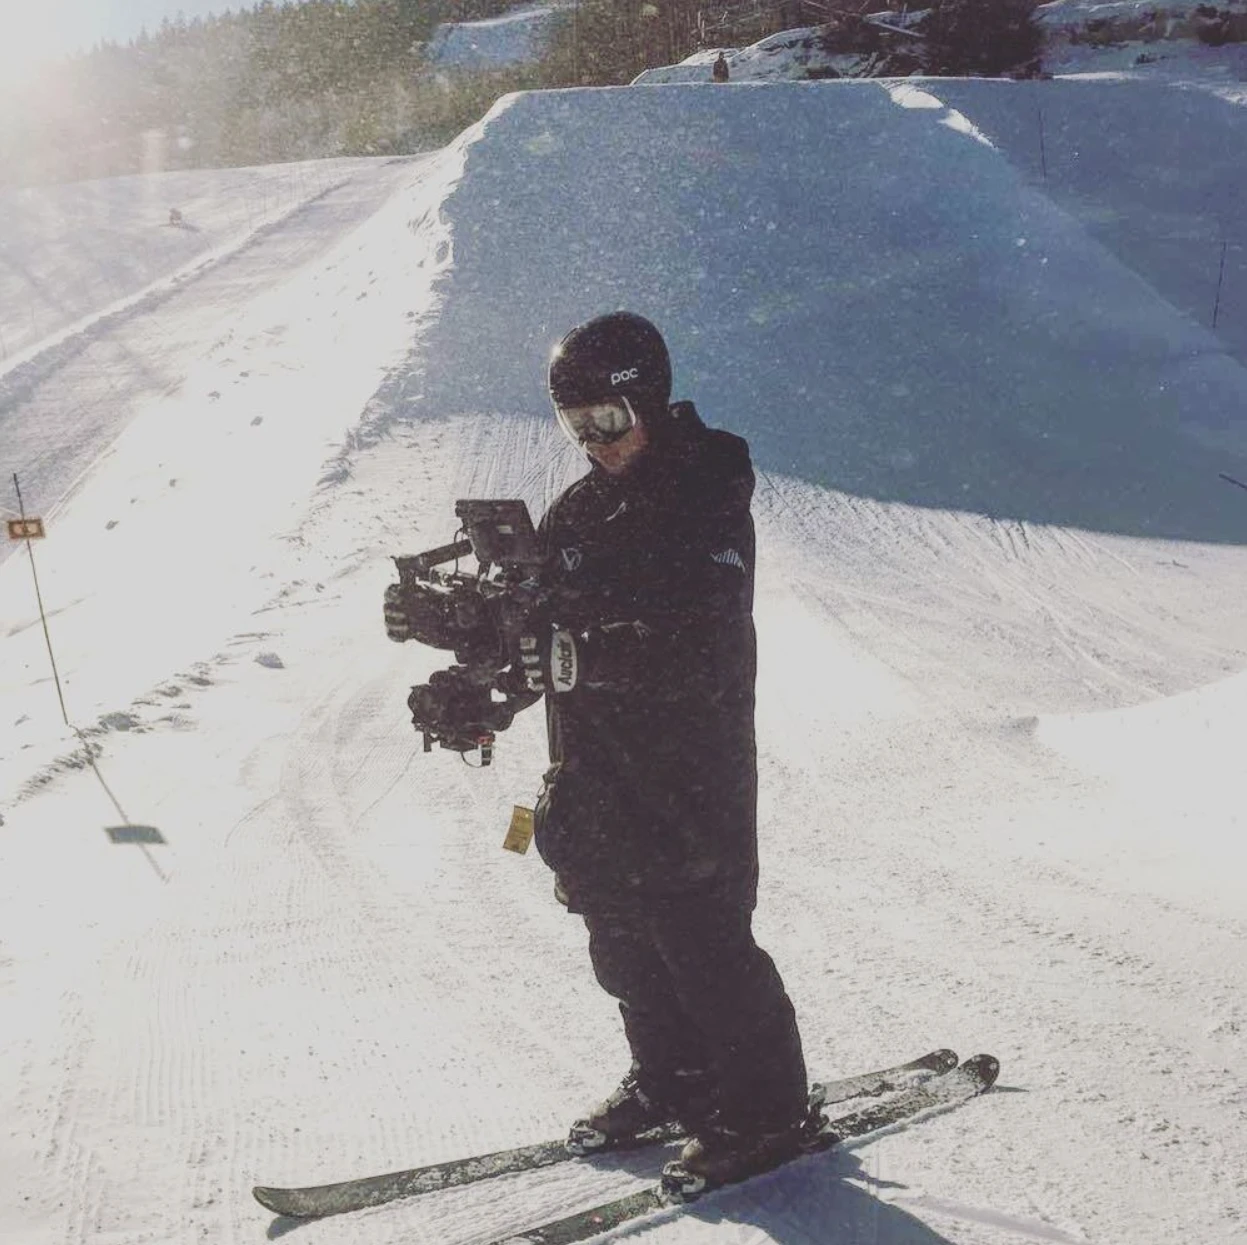 Vidéographe avec un Ronin pendant une session de ski